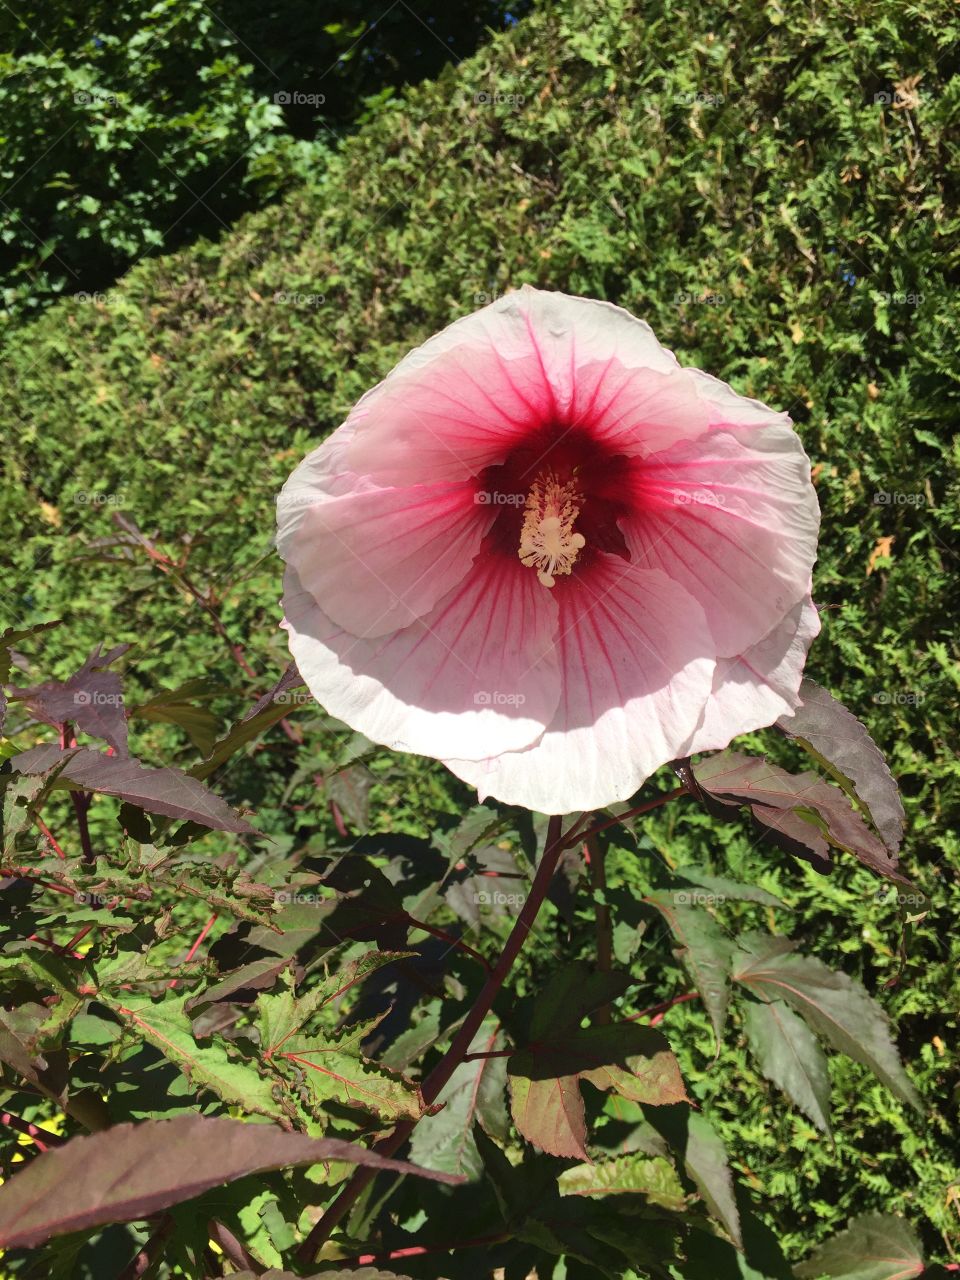 Flora pink floppy flower